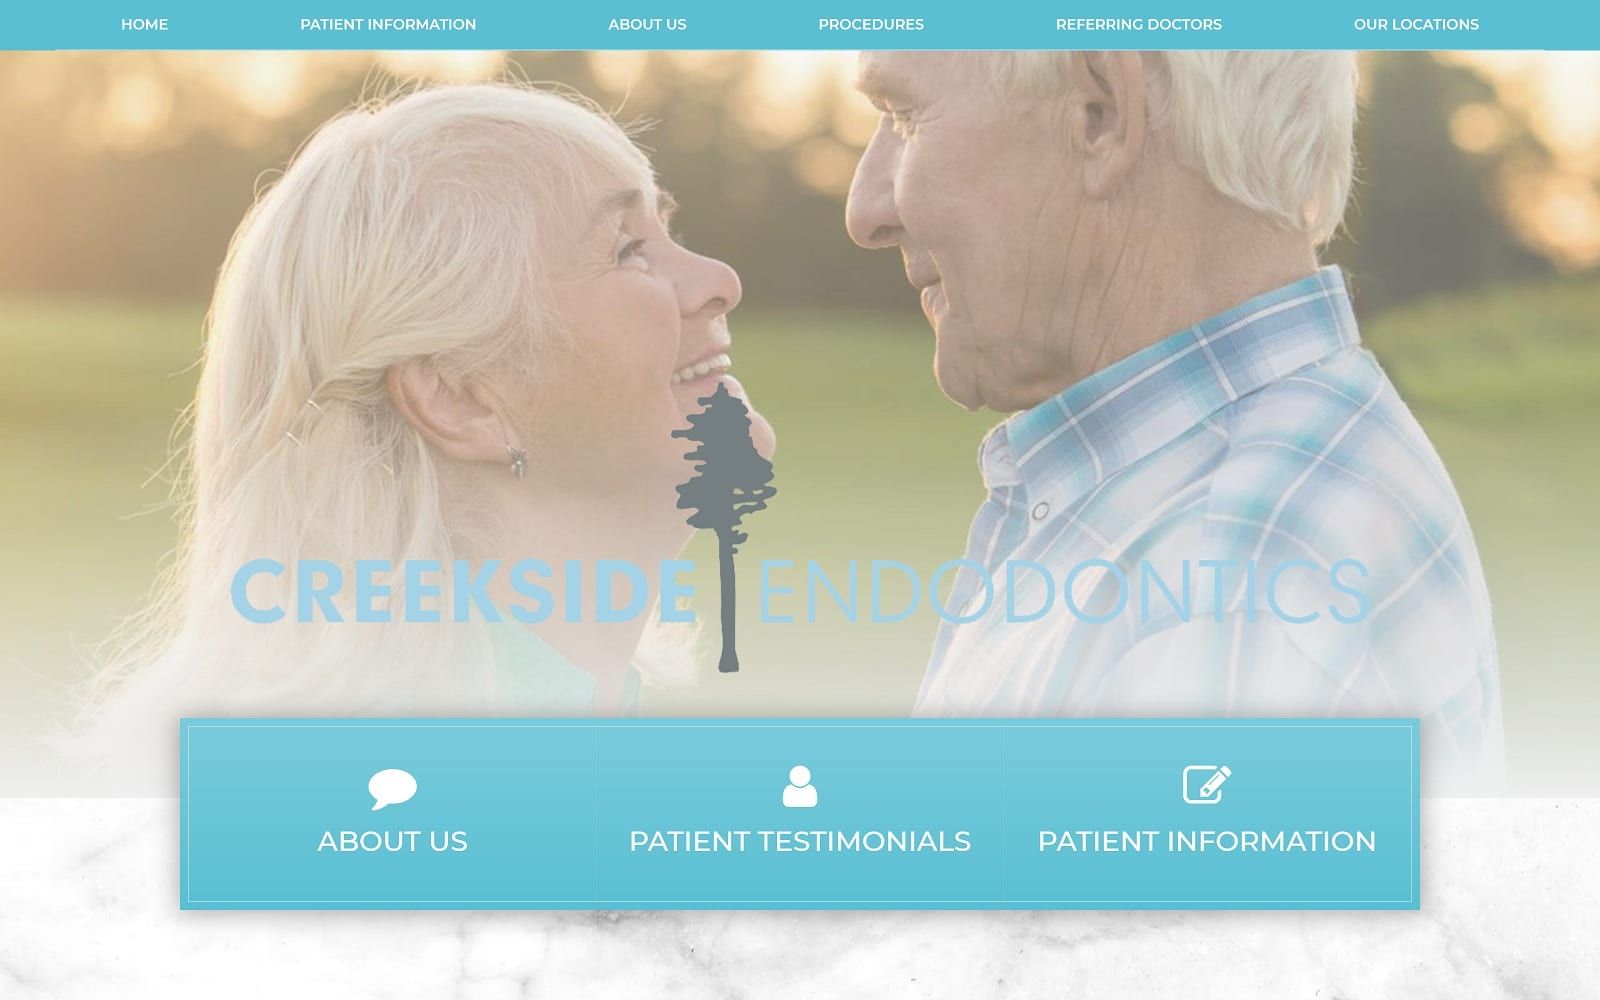 The screenshot of creekside endodontics creeksideendo. Net website